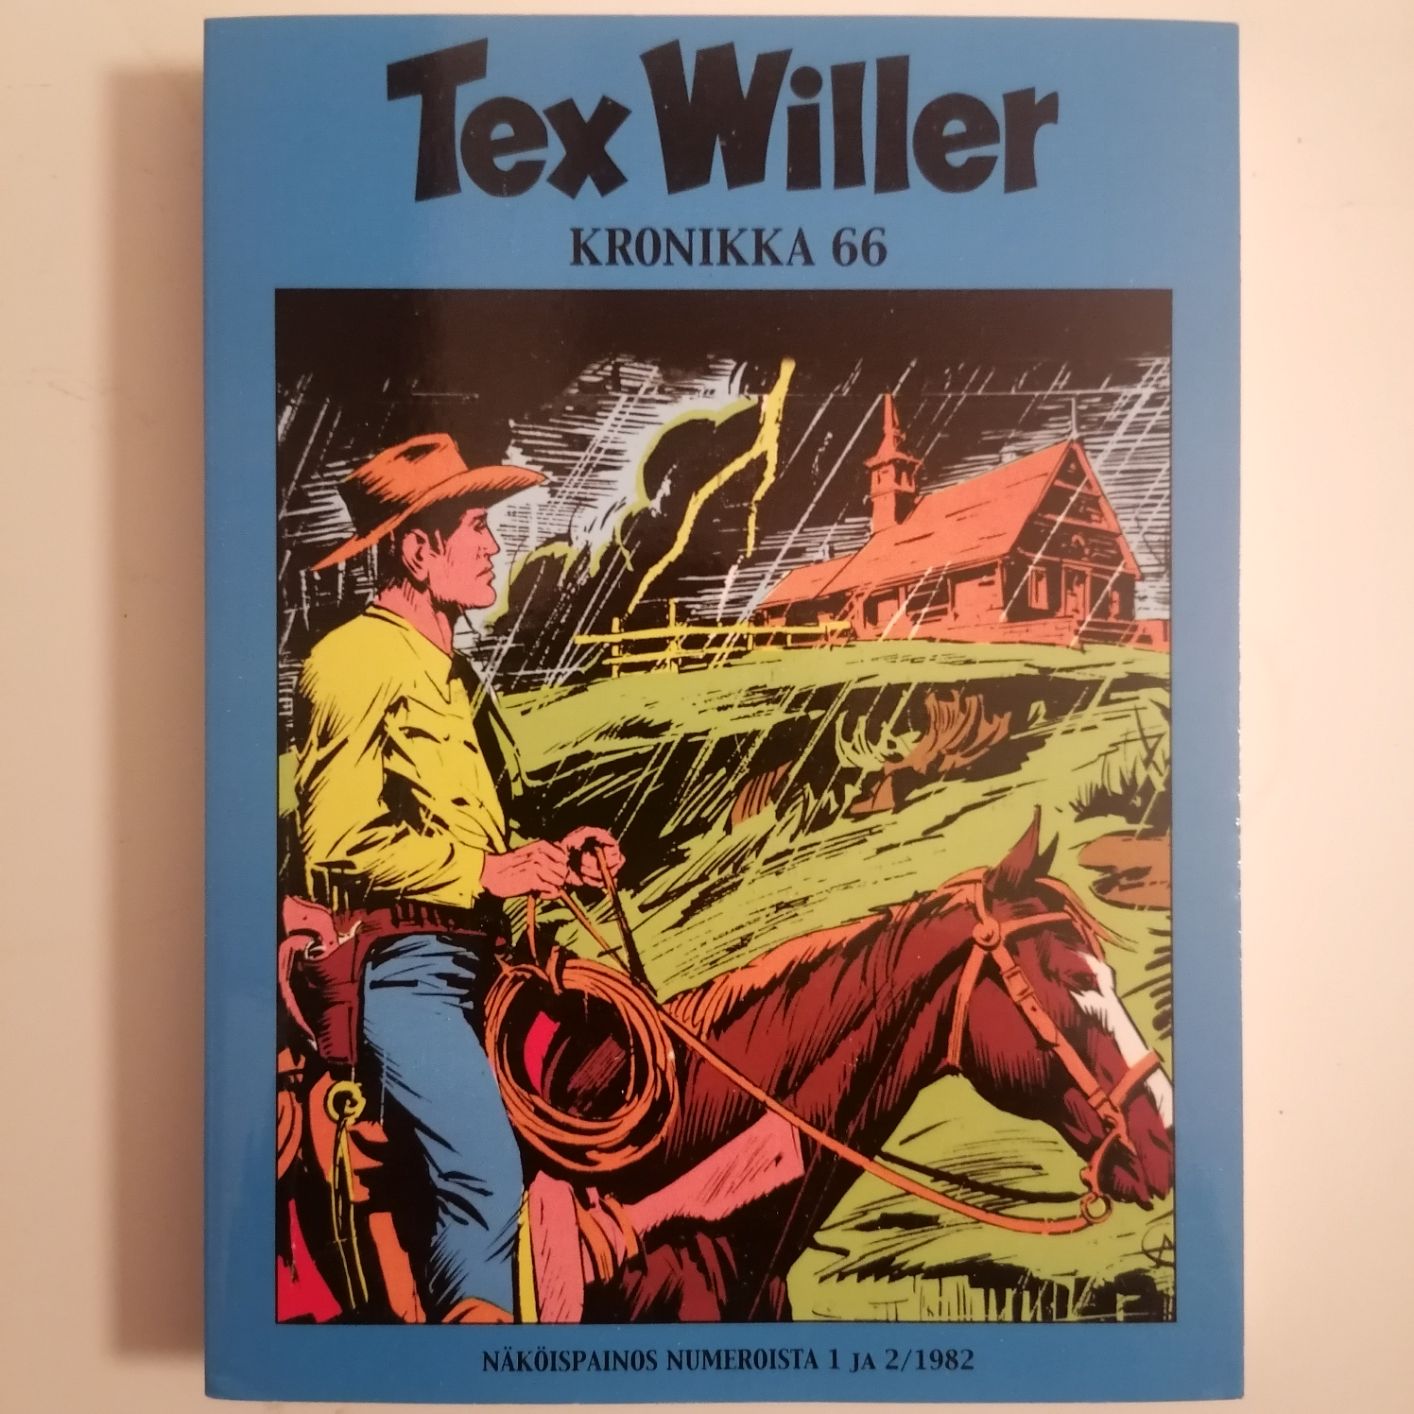 Tex Willer Kronikka 66 näköispainos 1 ja 2 / 1982 siistikuntoinen ja lukematon hinta 5,50euroa.